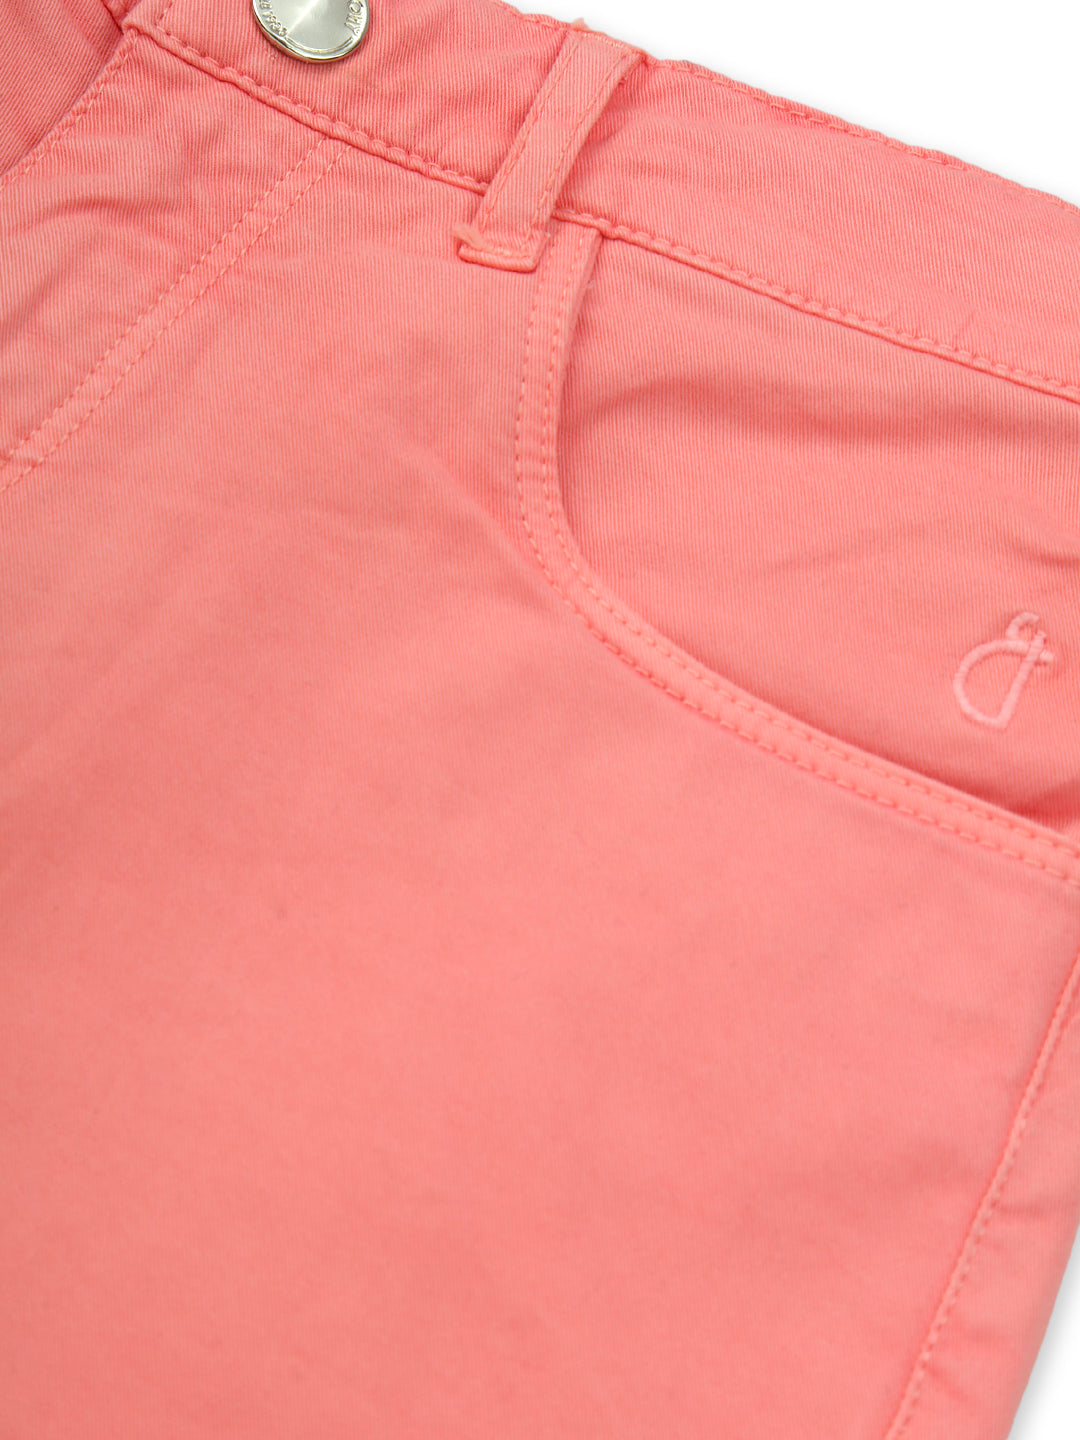 Girls Pink Cotton Denim Solid Shorts